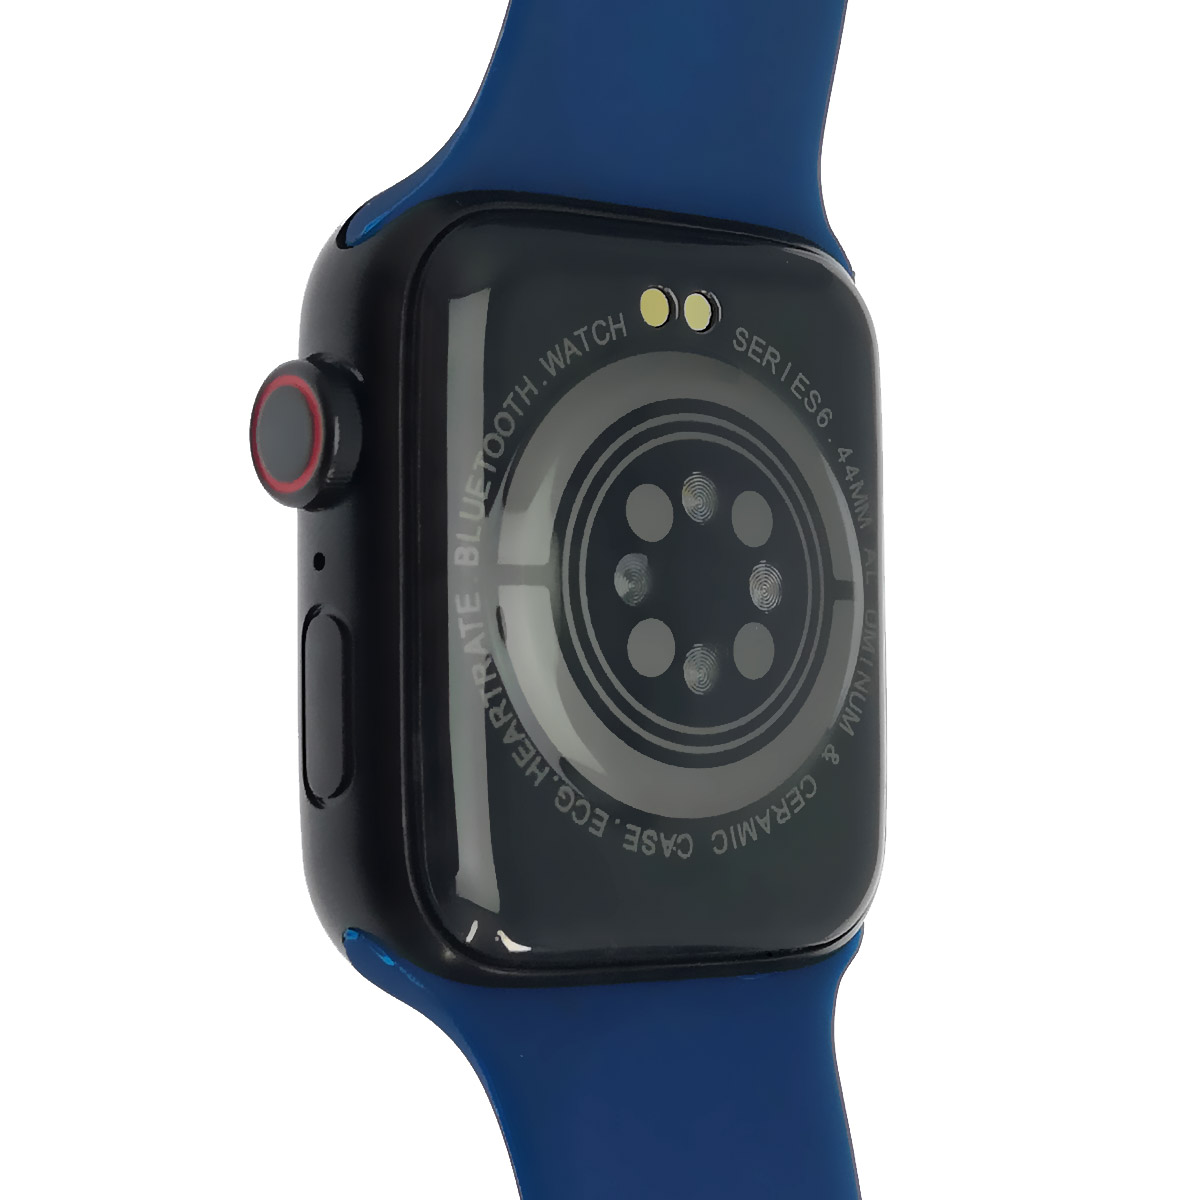 Смарт часы Hiwatch 6 (T500+), Bluetooth, шагомер, датчик пульса, цвет черно синий